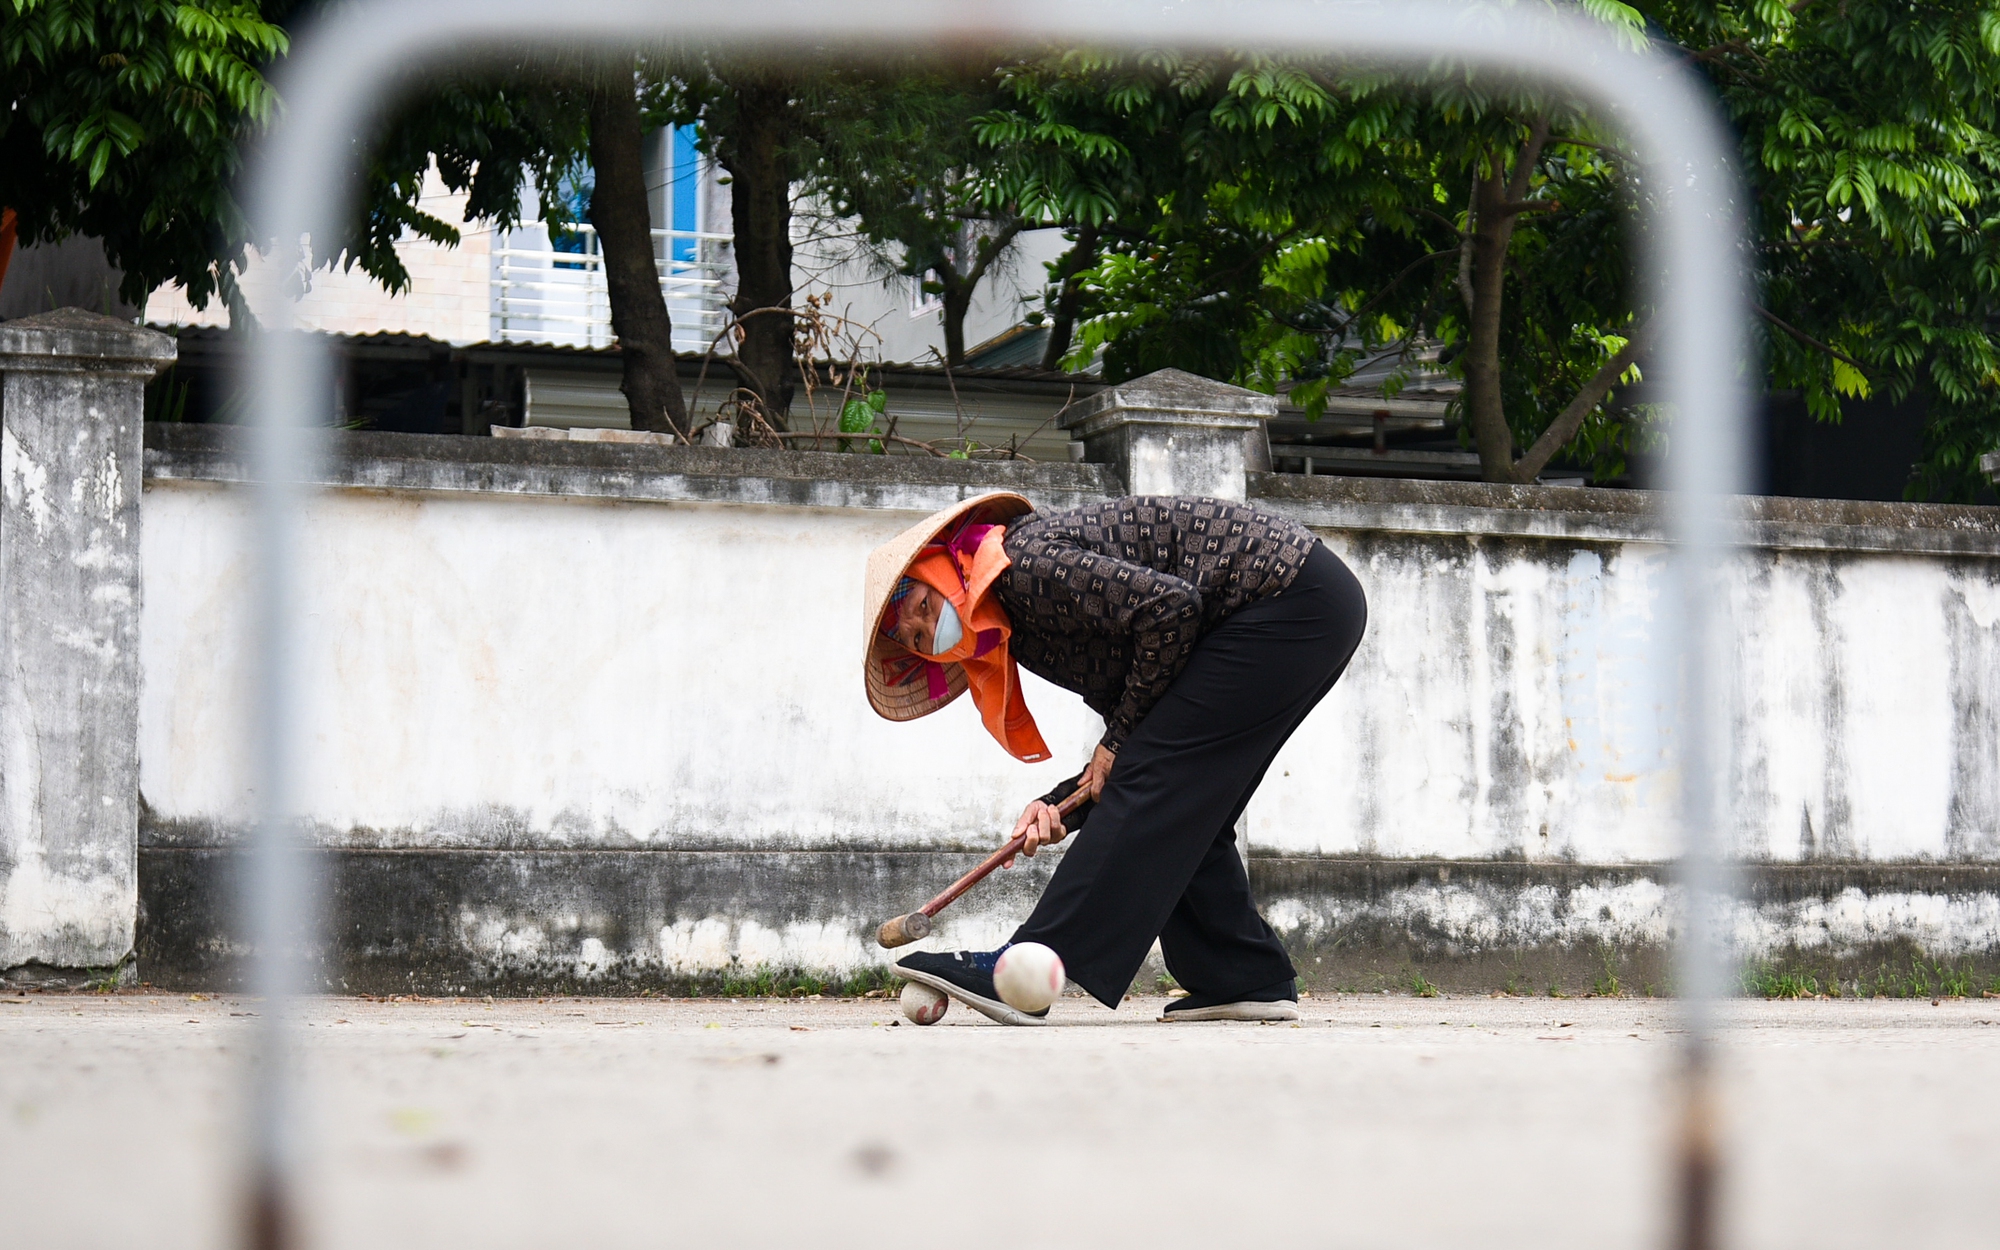 Hơn 20 năm qua, phụ nữ ngoại thành Hà Nội say mê vung gậy chơi môn thể thao quý tộc châu Âu